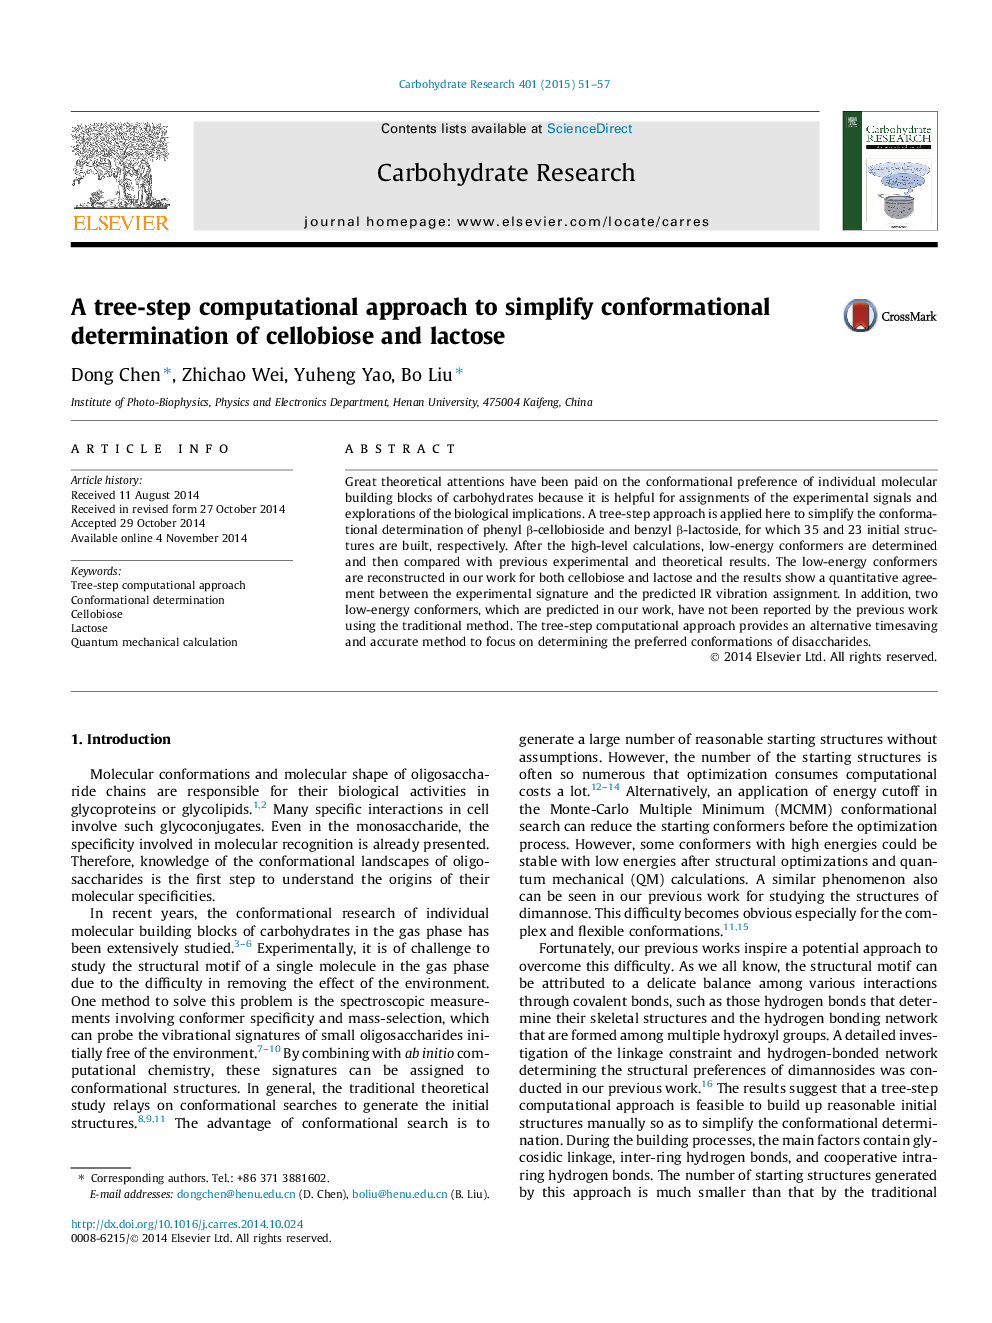 یک رویکرد محاسباتی درختی برای ساده سازی تعریف شکل گیری سلبیوئوز و لاکتوز 